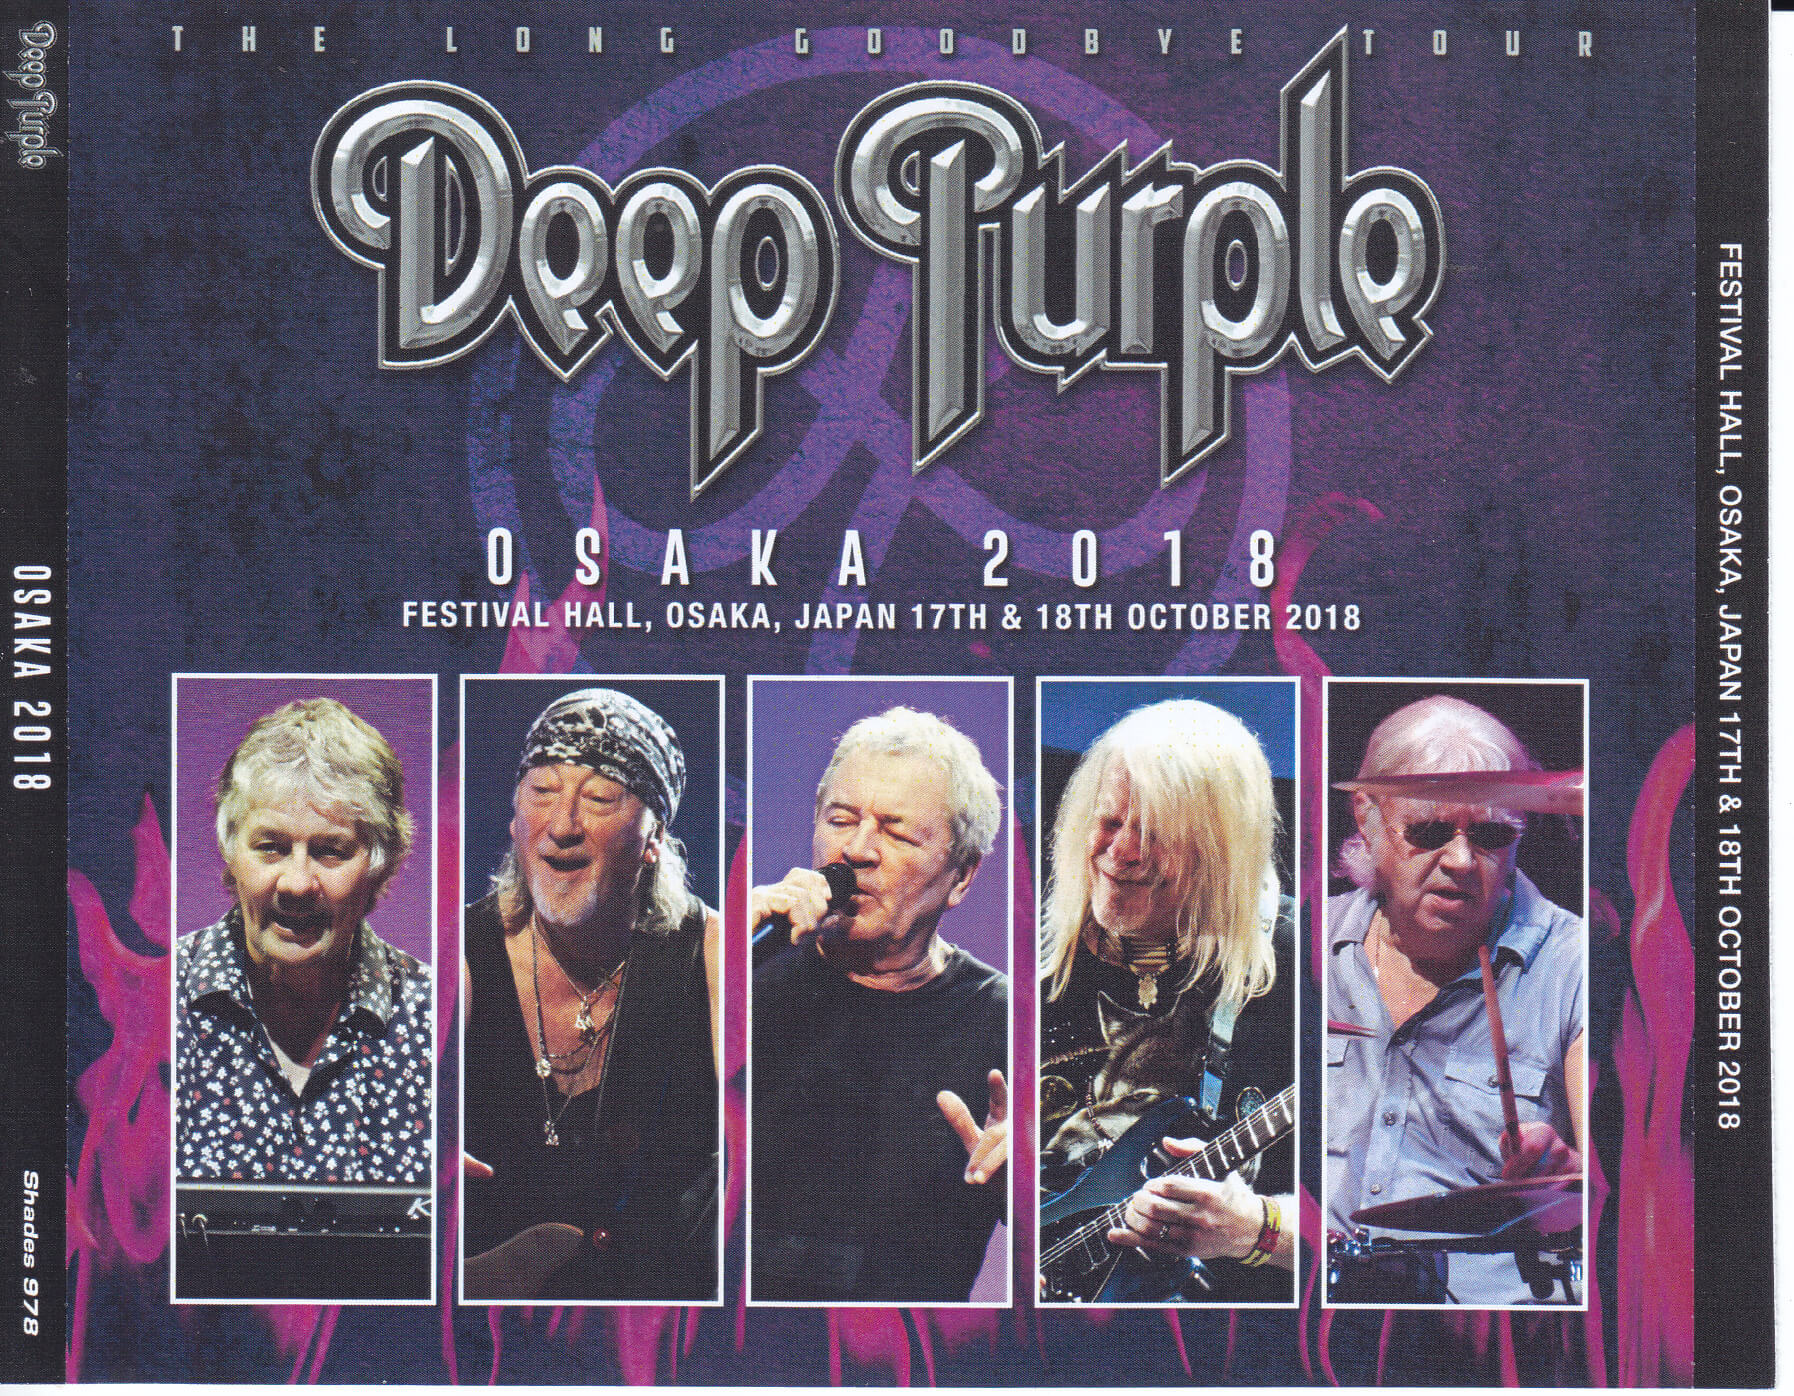 Deep Purple / Osaka 2018 / 4CDR – GiGinJapan